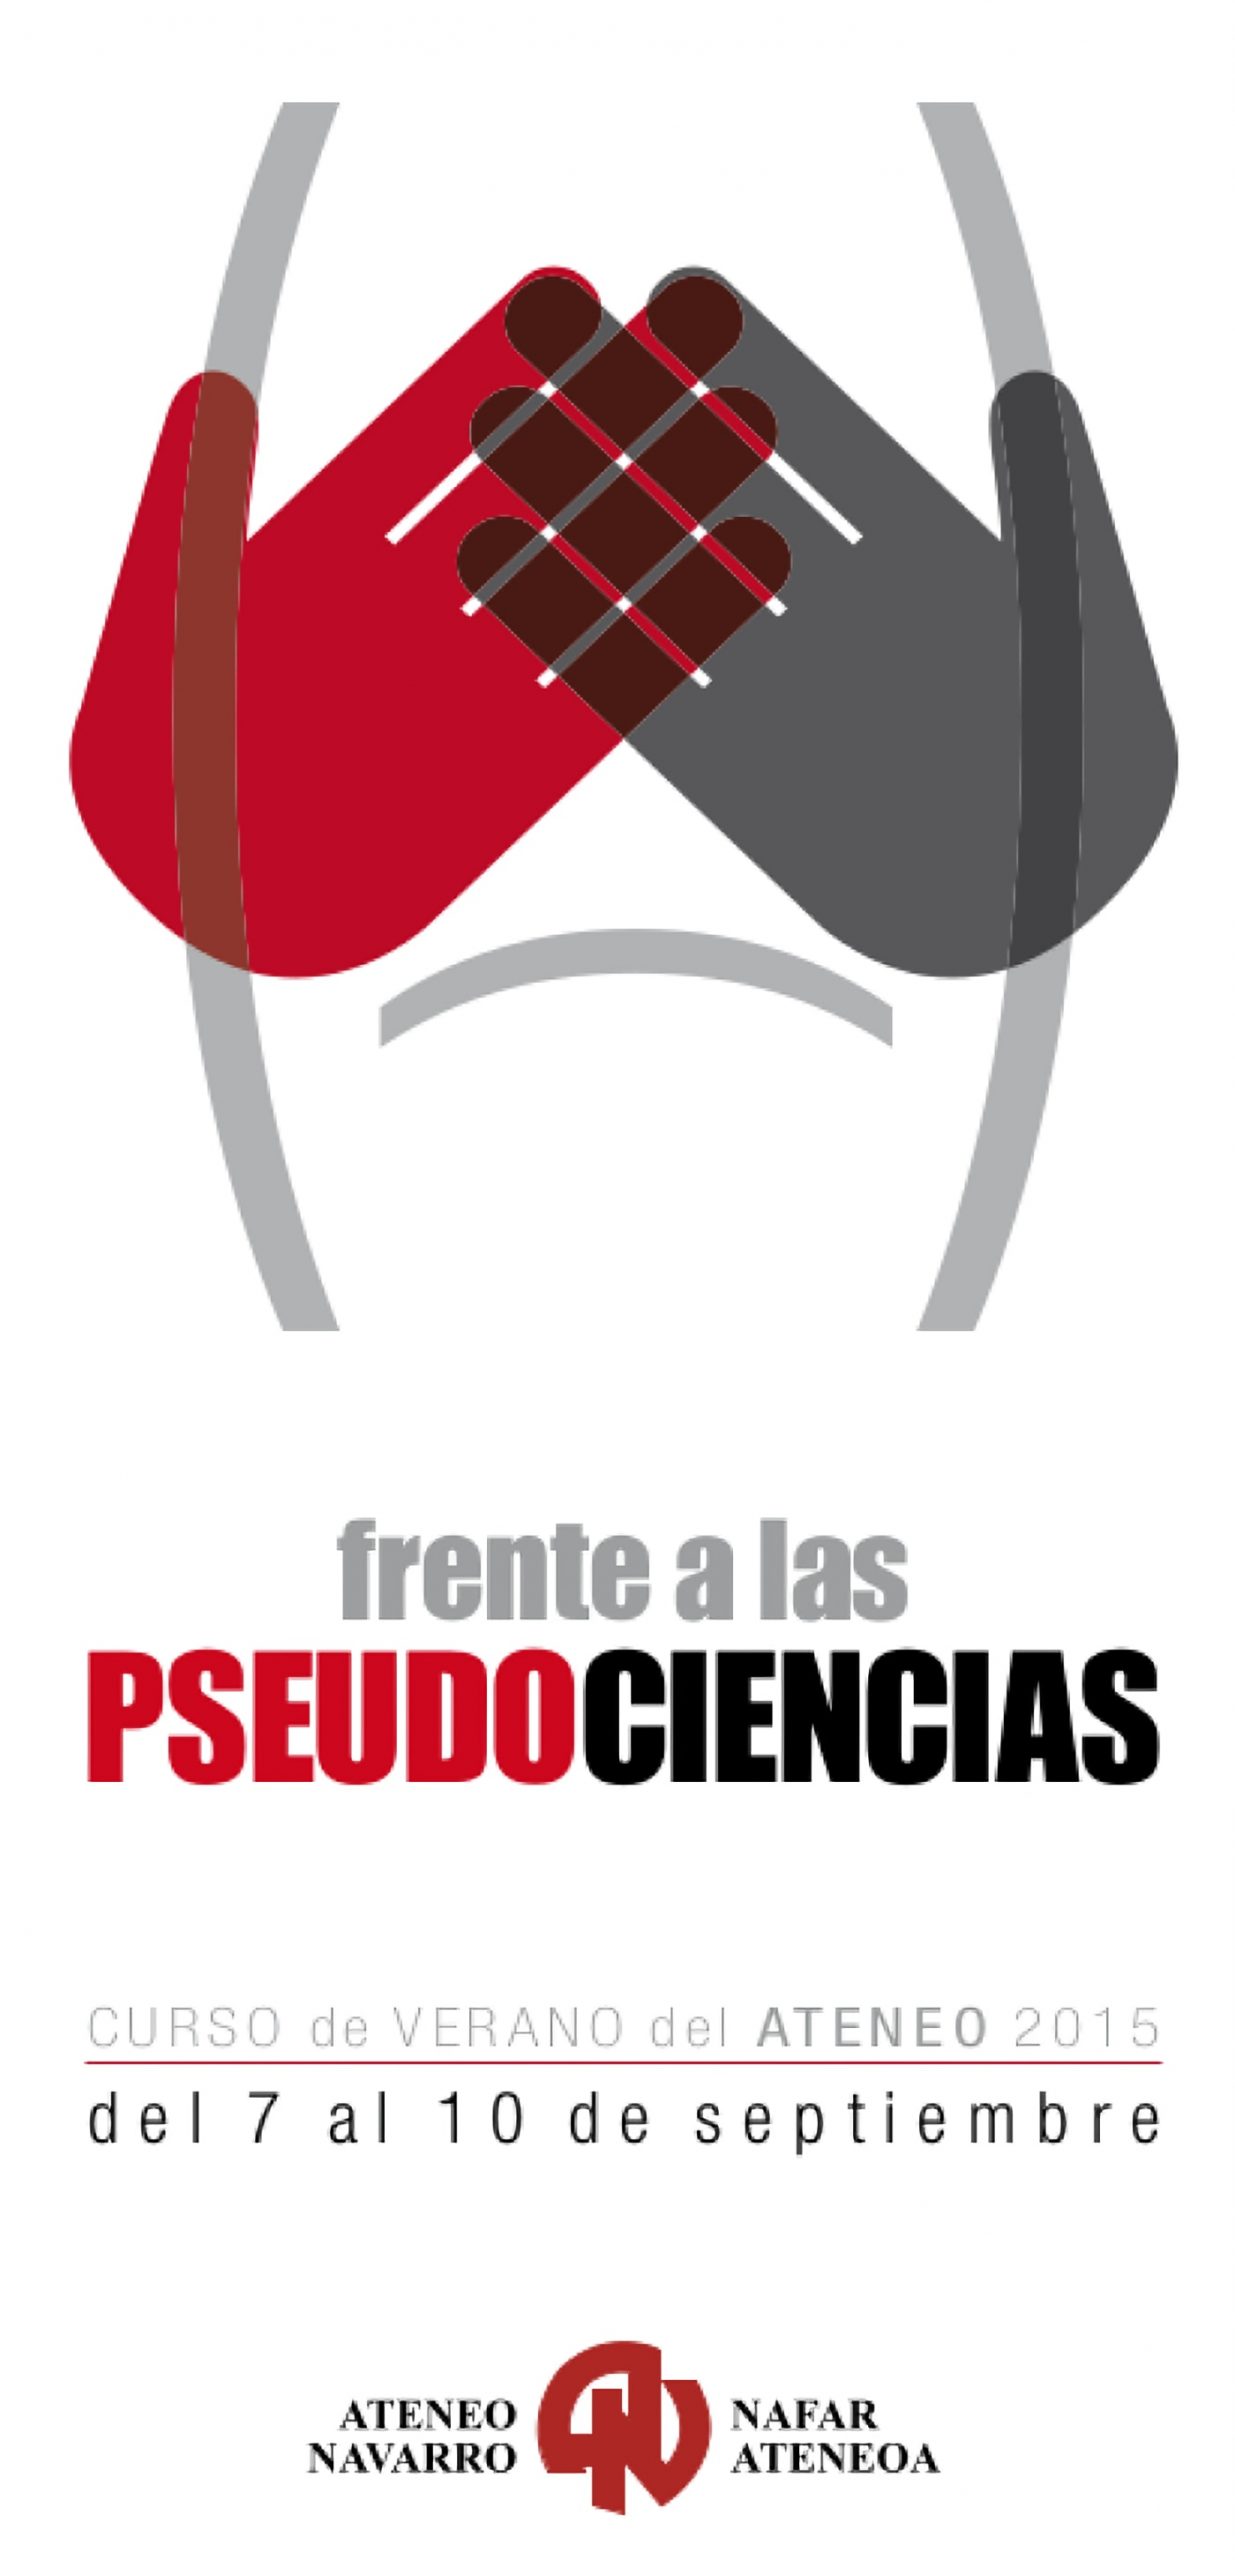 ‘Frente a las pseudociencias’, del 7 al 10 de septiembre en Pamplona